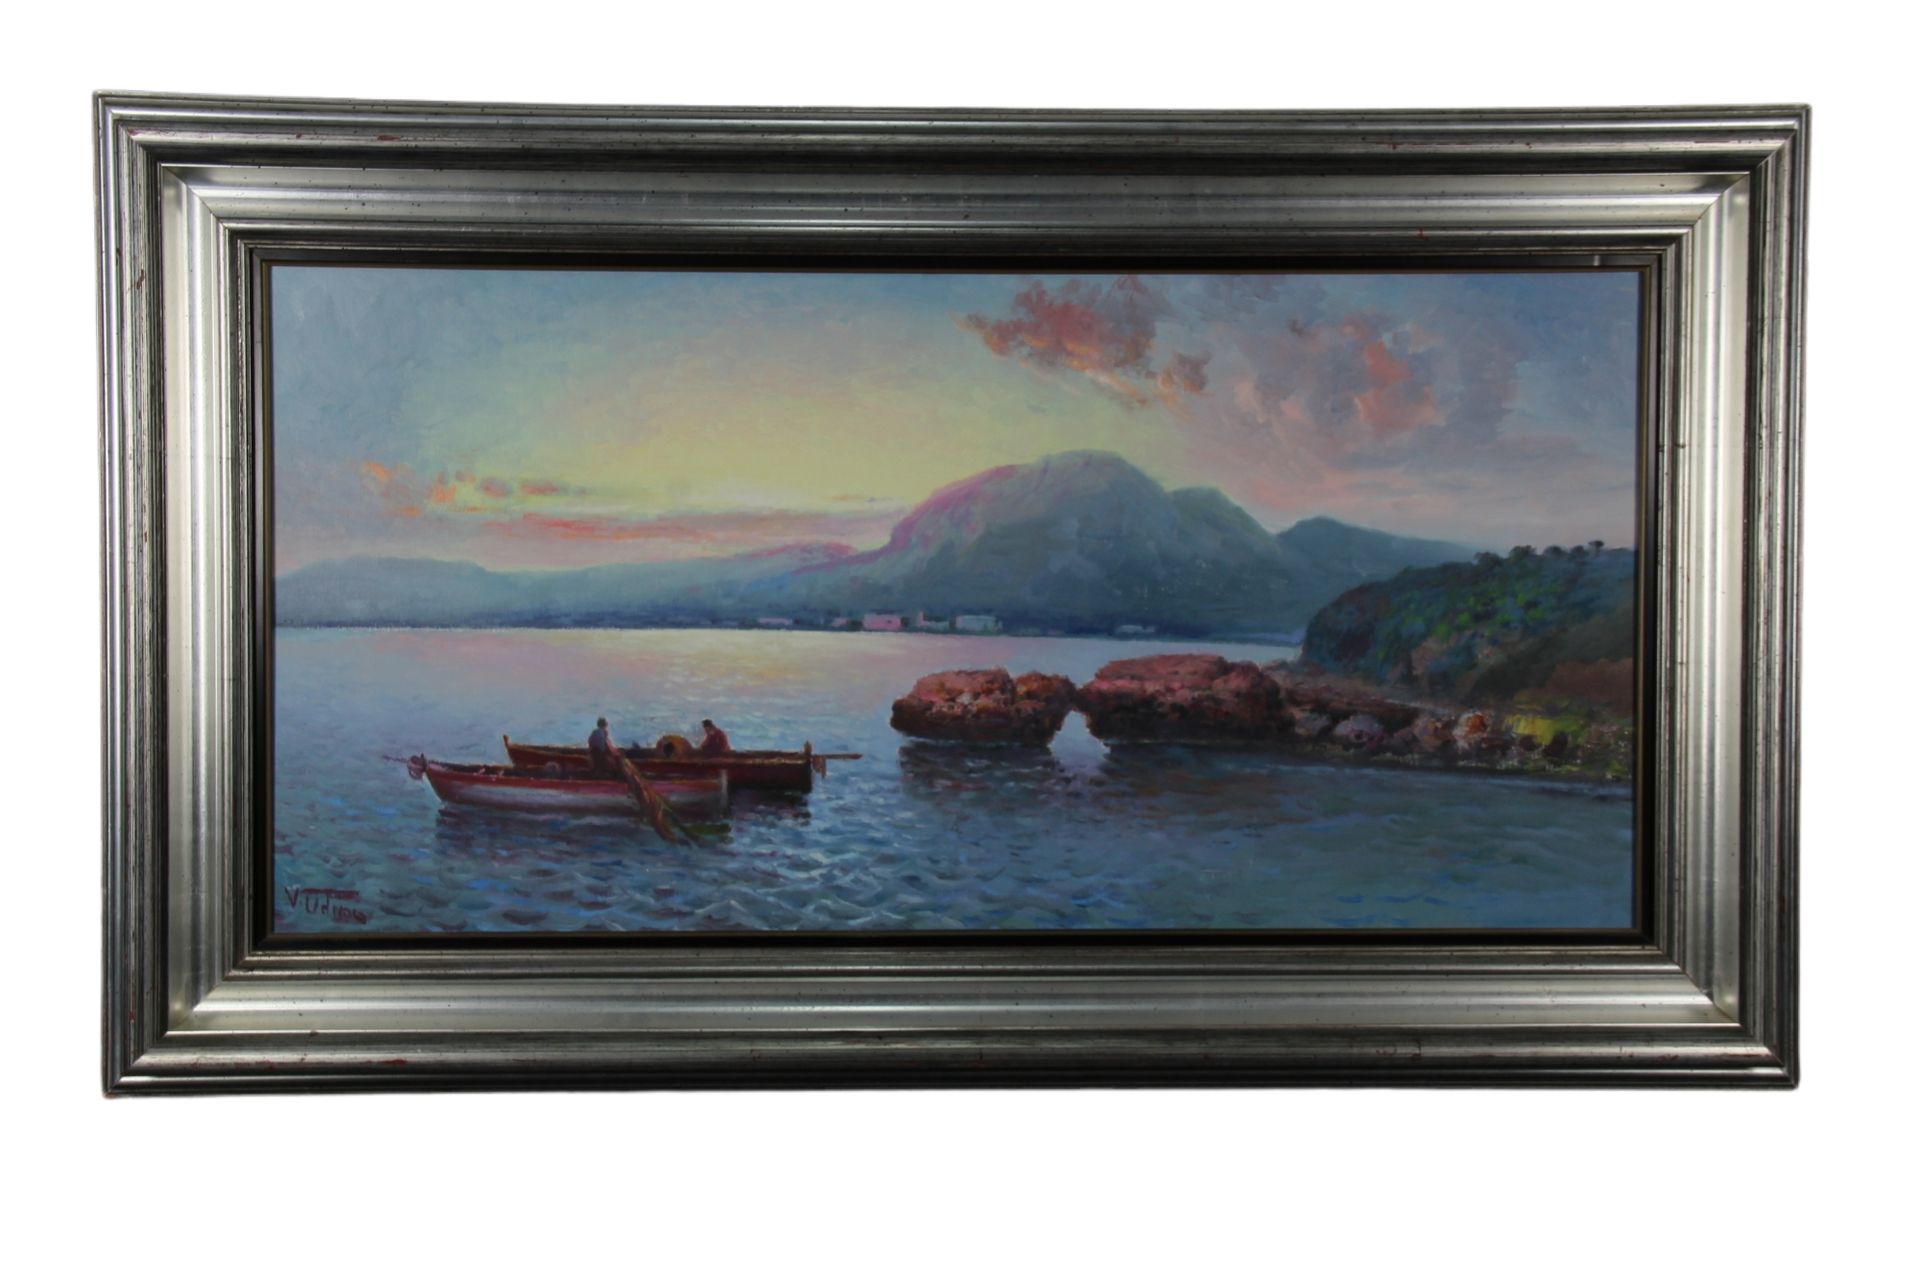 DIPINTO OLIO SU TELA Raff Marina mit Booten und Fischern bei Sonnenuntergang, ve&hellip;